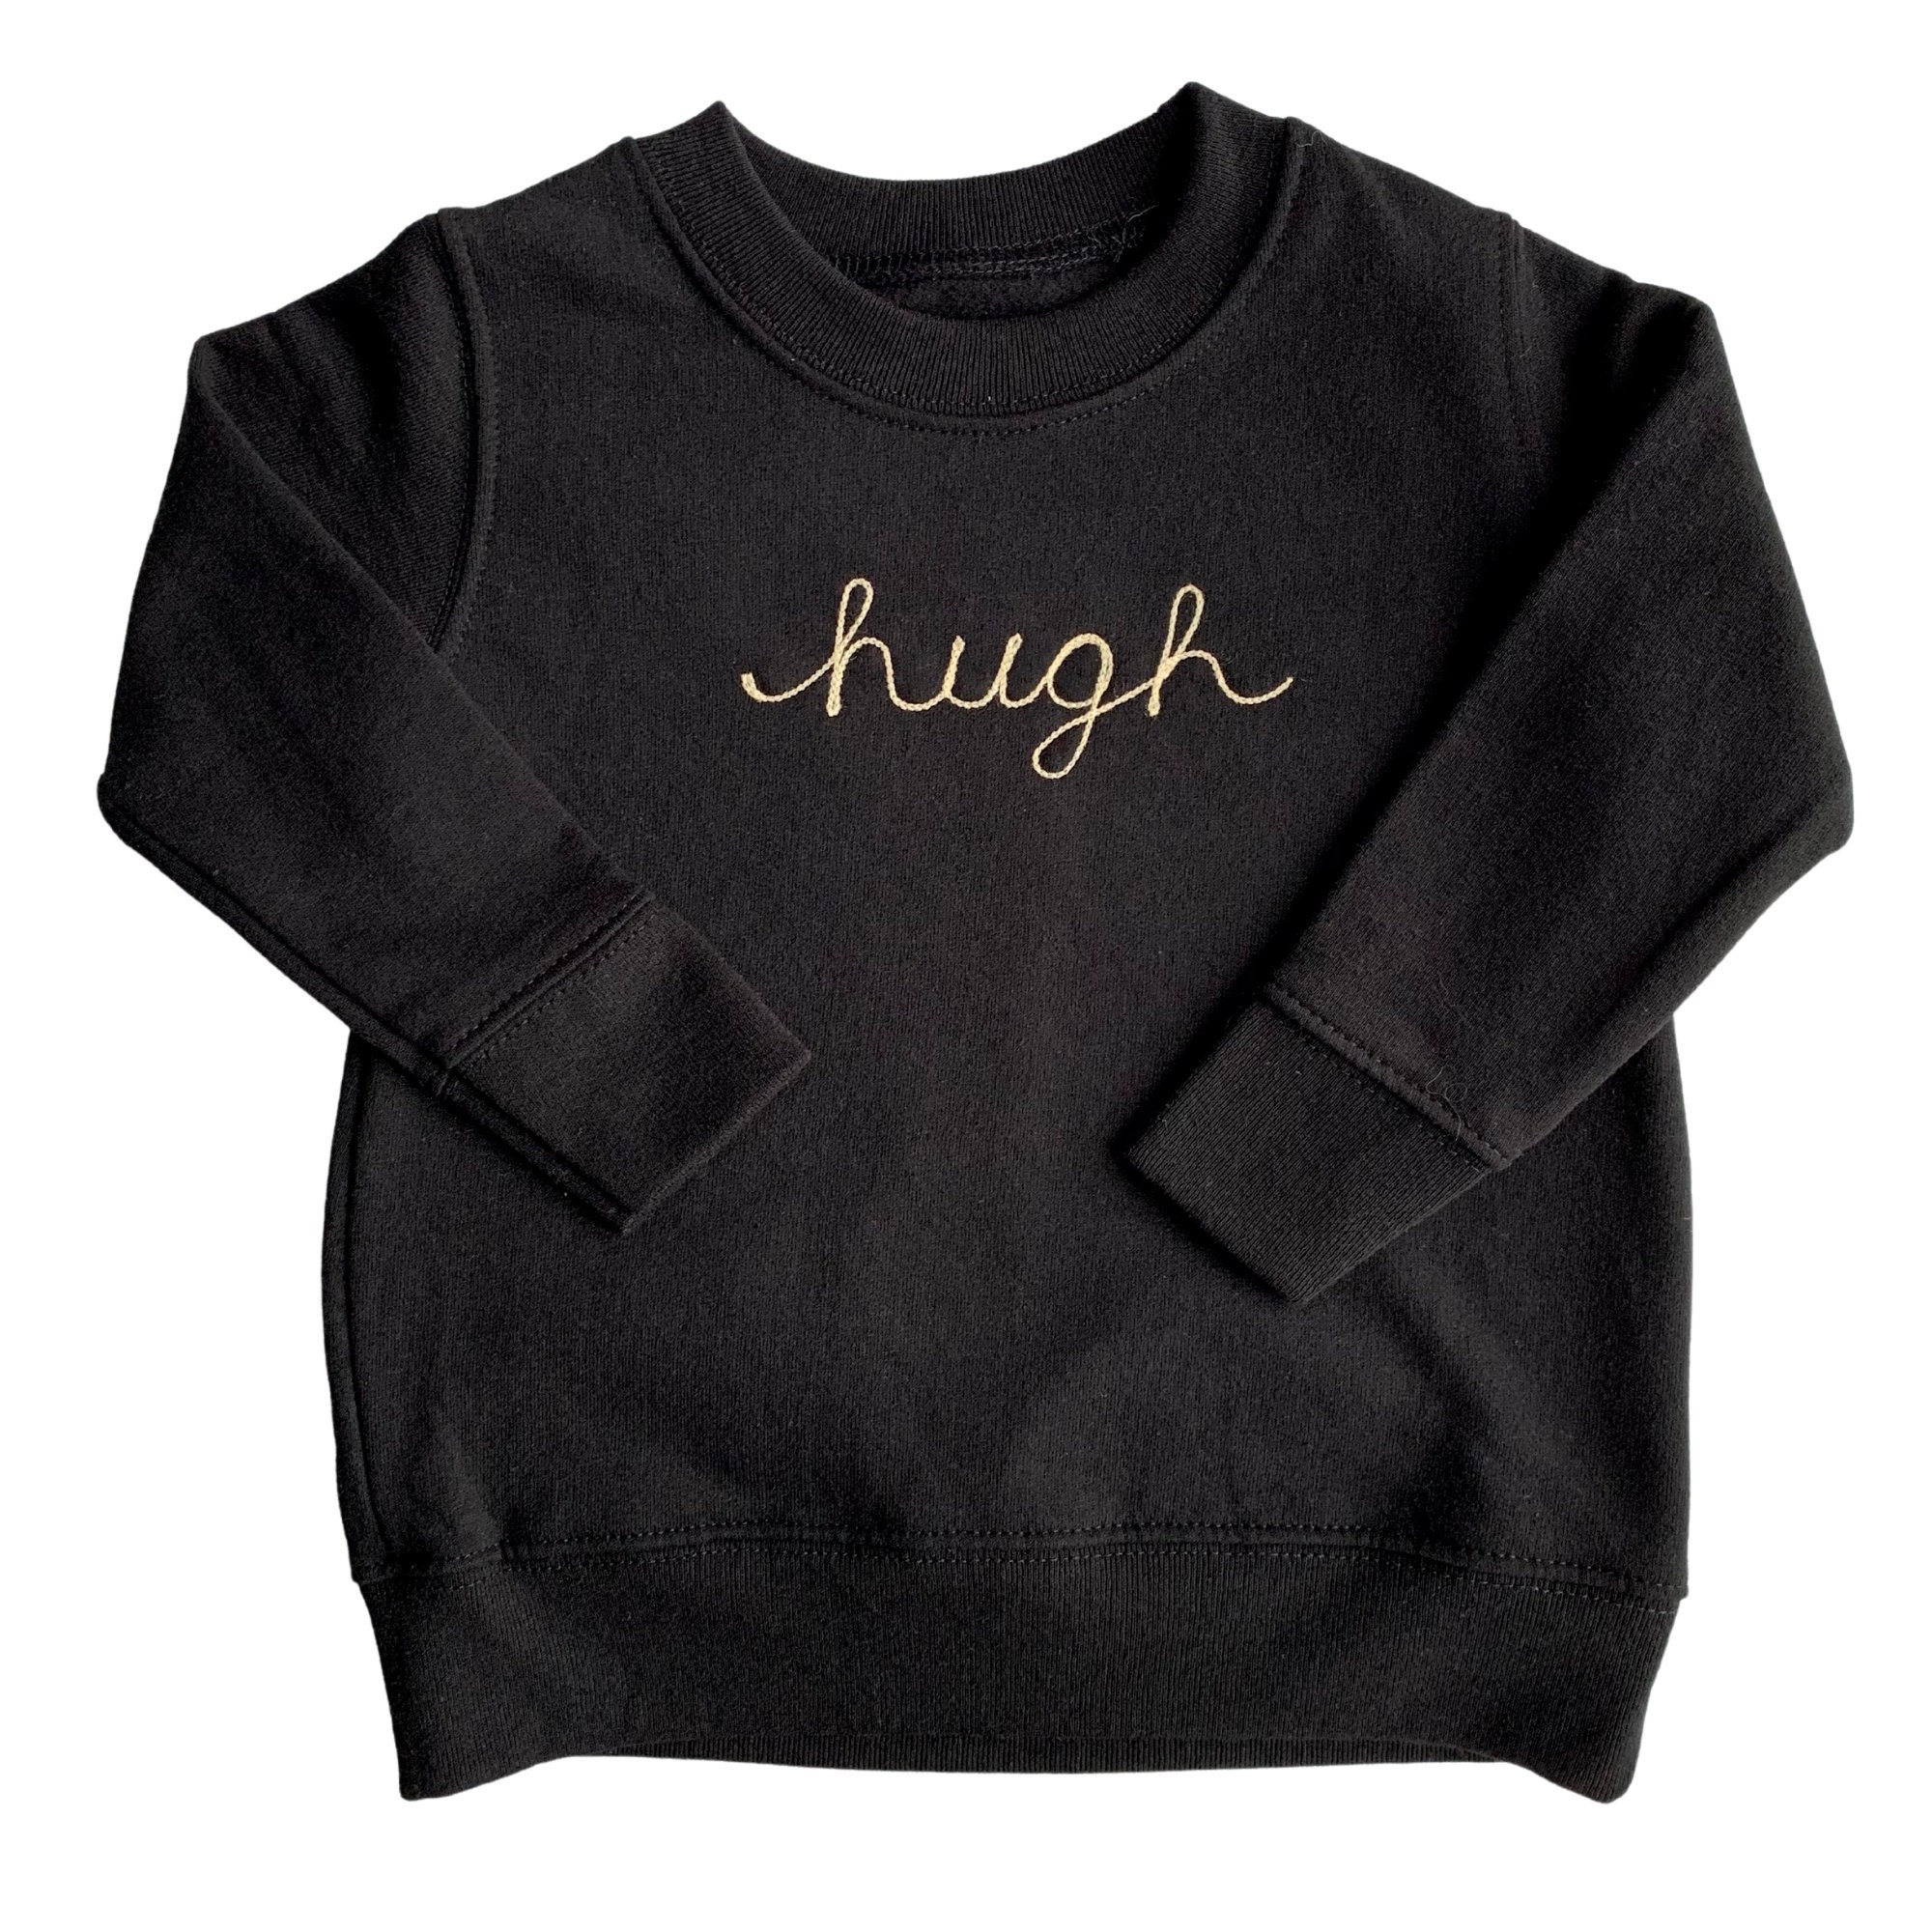 Custom Monogram Sweatshirt – Embroidered Girl